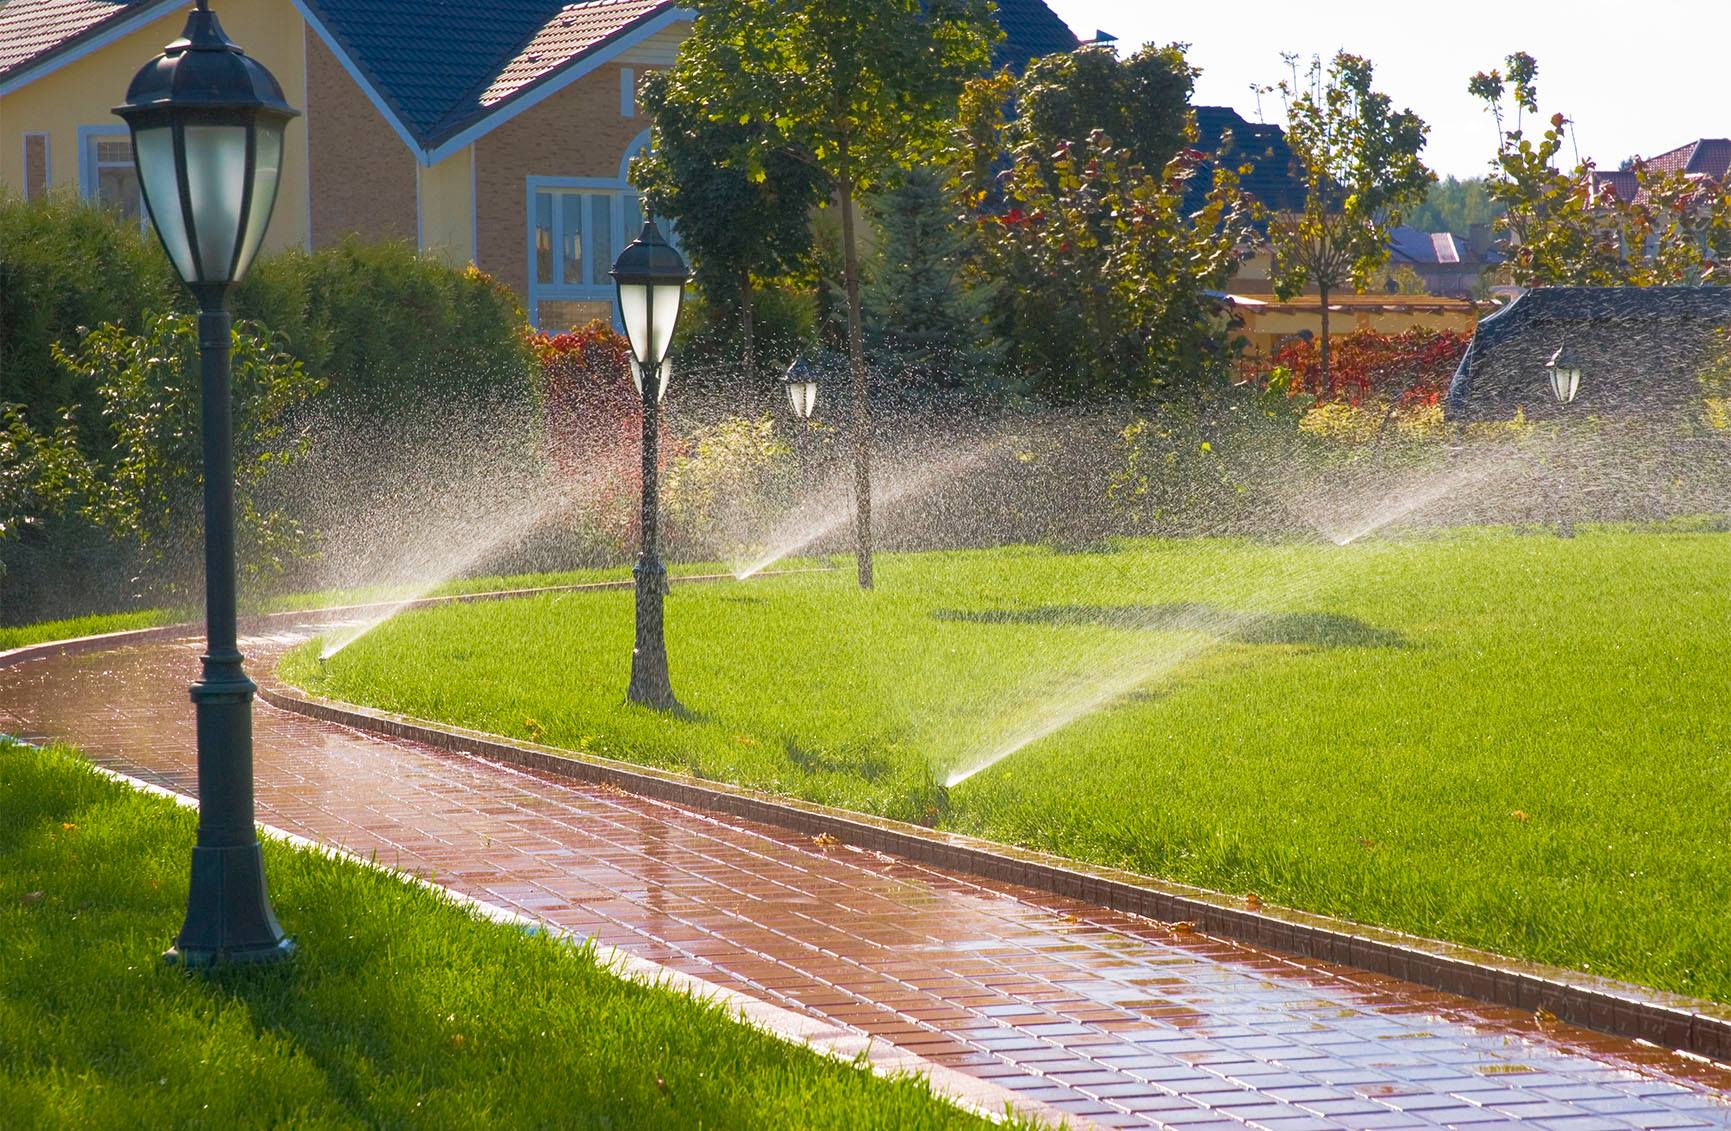 How to Set Zones on Sprinkler System?